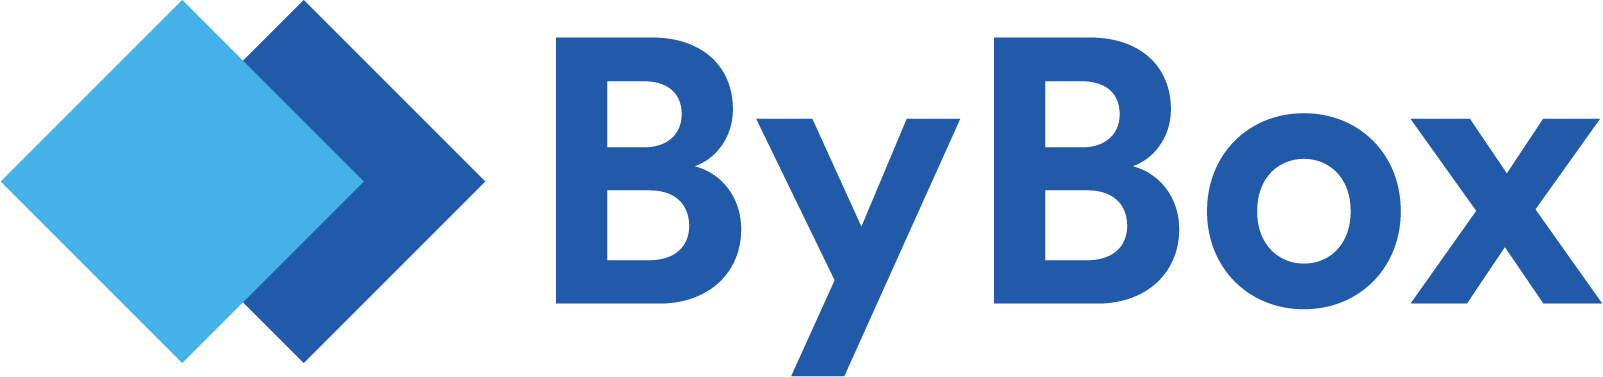 ByBox Deliver Logo